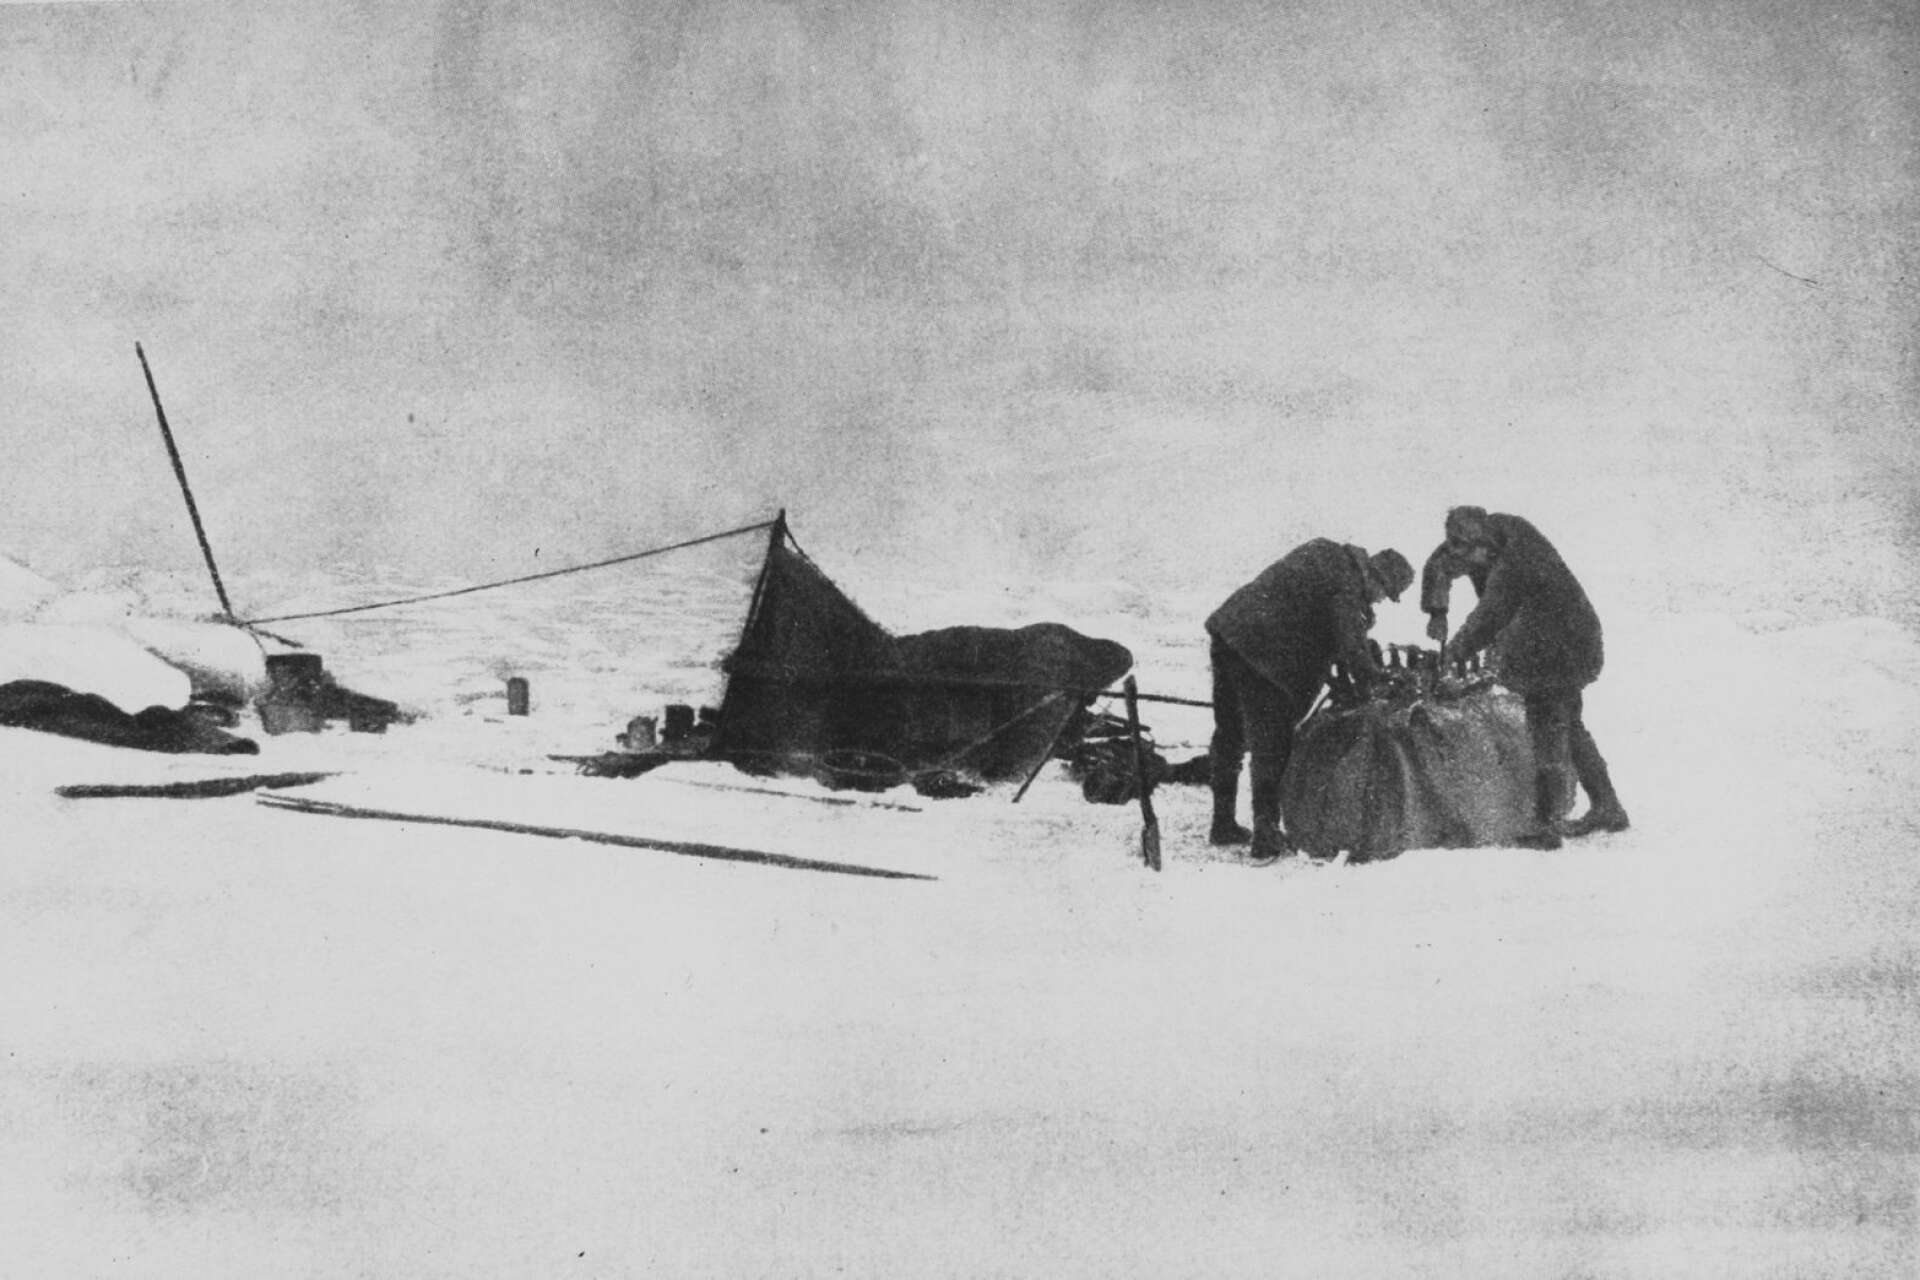  S. A. Andrée:s ballongexpedition mot Nordpolen. Luftballongen med namnet Örnen lyfter den 11 juni 1897. Ombord finns Andrée, Fraenkel och Strindberg och deras mål är Nordpolen. Två dagar senare nödlandar de på isen. Under de närmaste tre månaderna befinner de sig i det förrädiska landskapet. I oktober når de Vitön där man 33 år senare hittar deras sista viloplats. Där återfinns även glasplåtar.